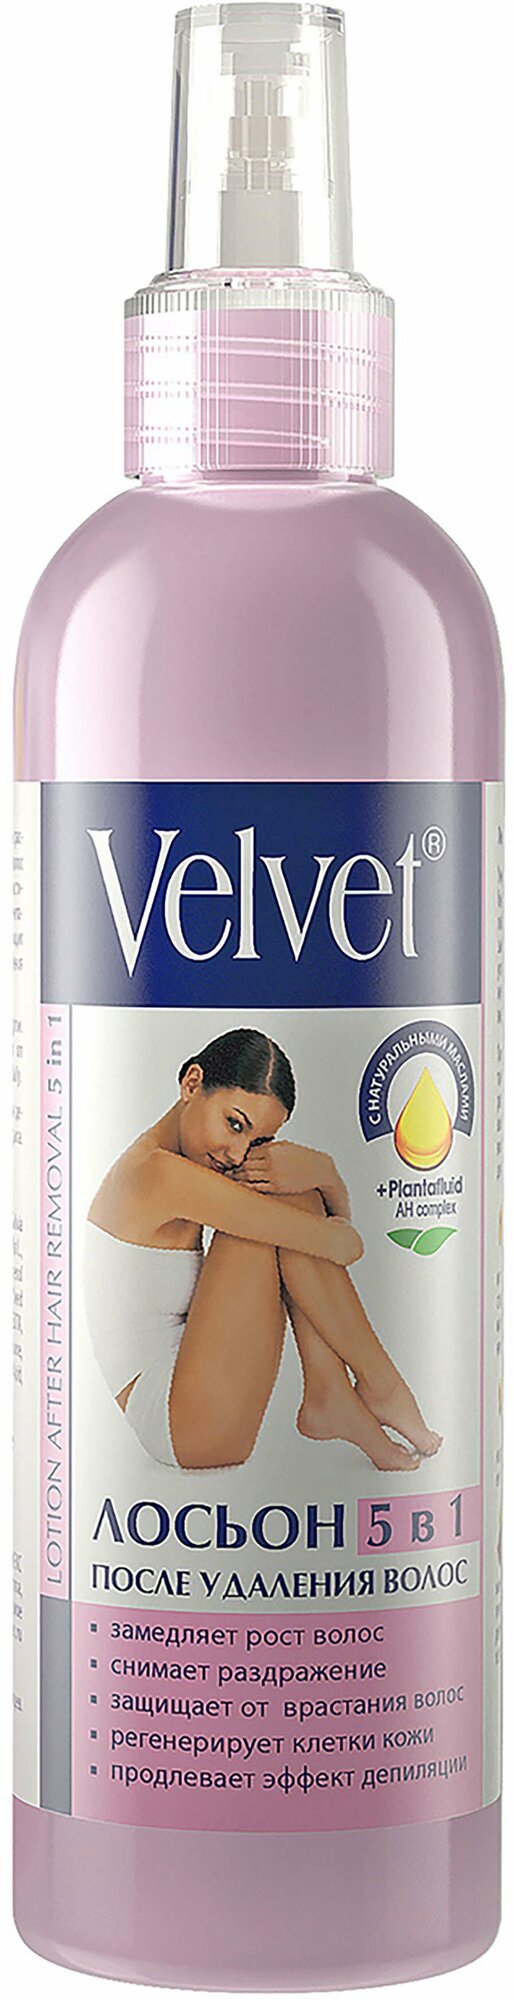 Лосьон после депиляции Velvet для замедления роста волос 5в1, 200 мл